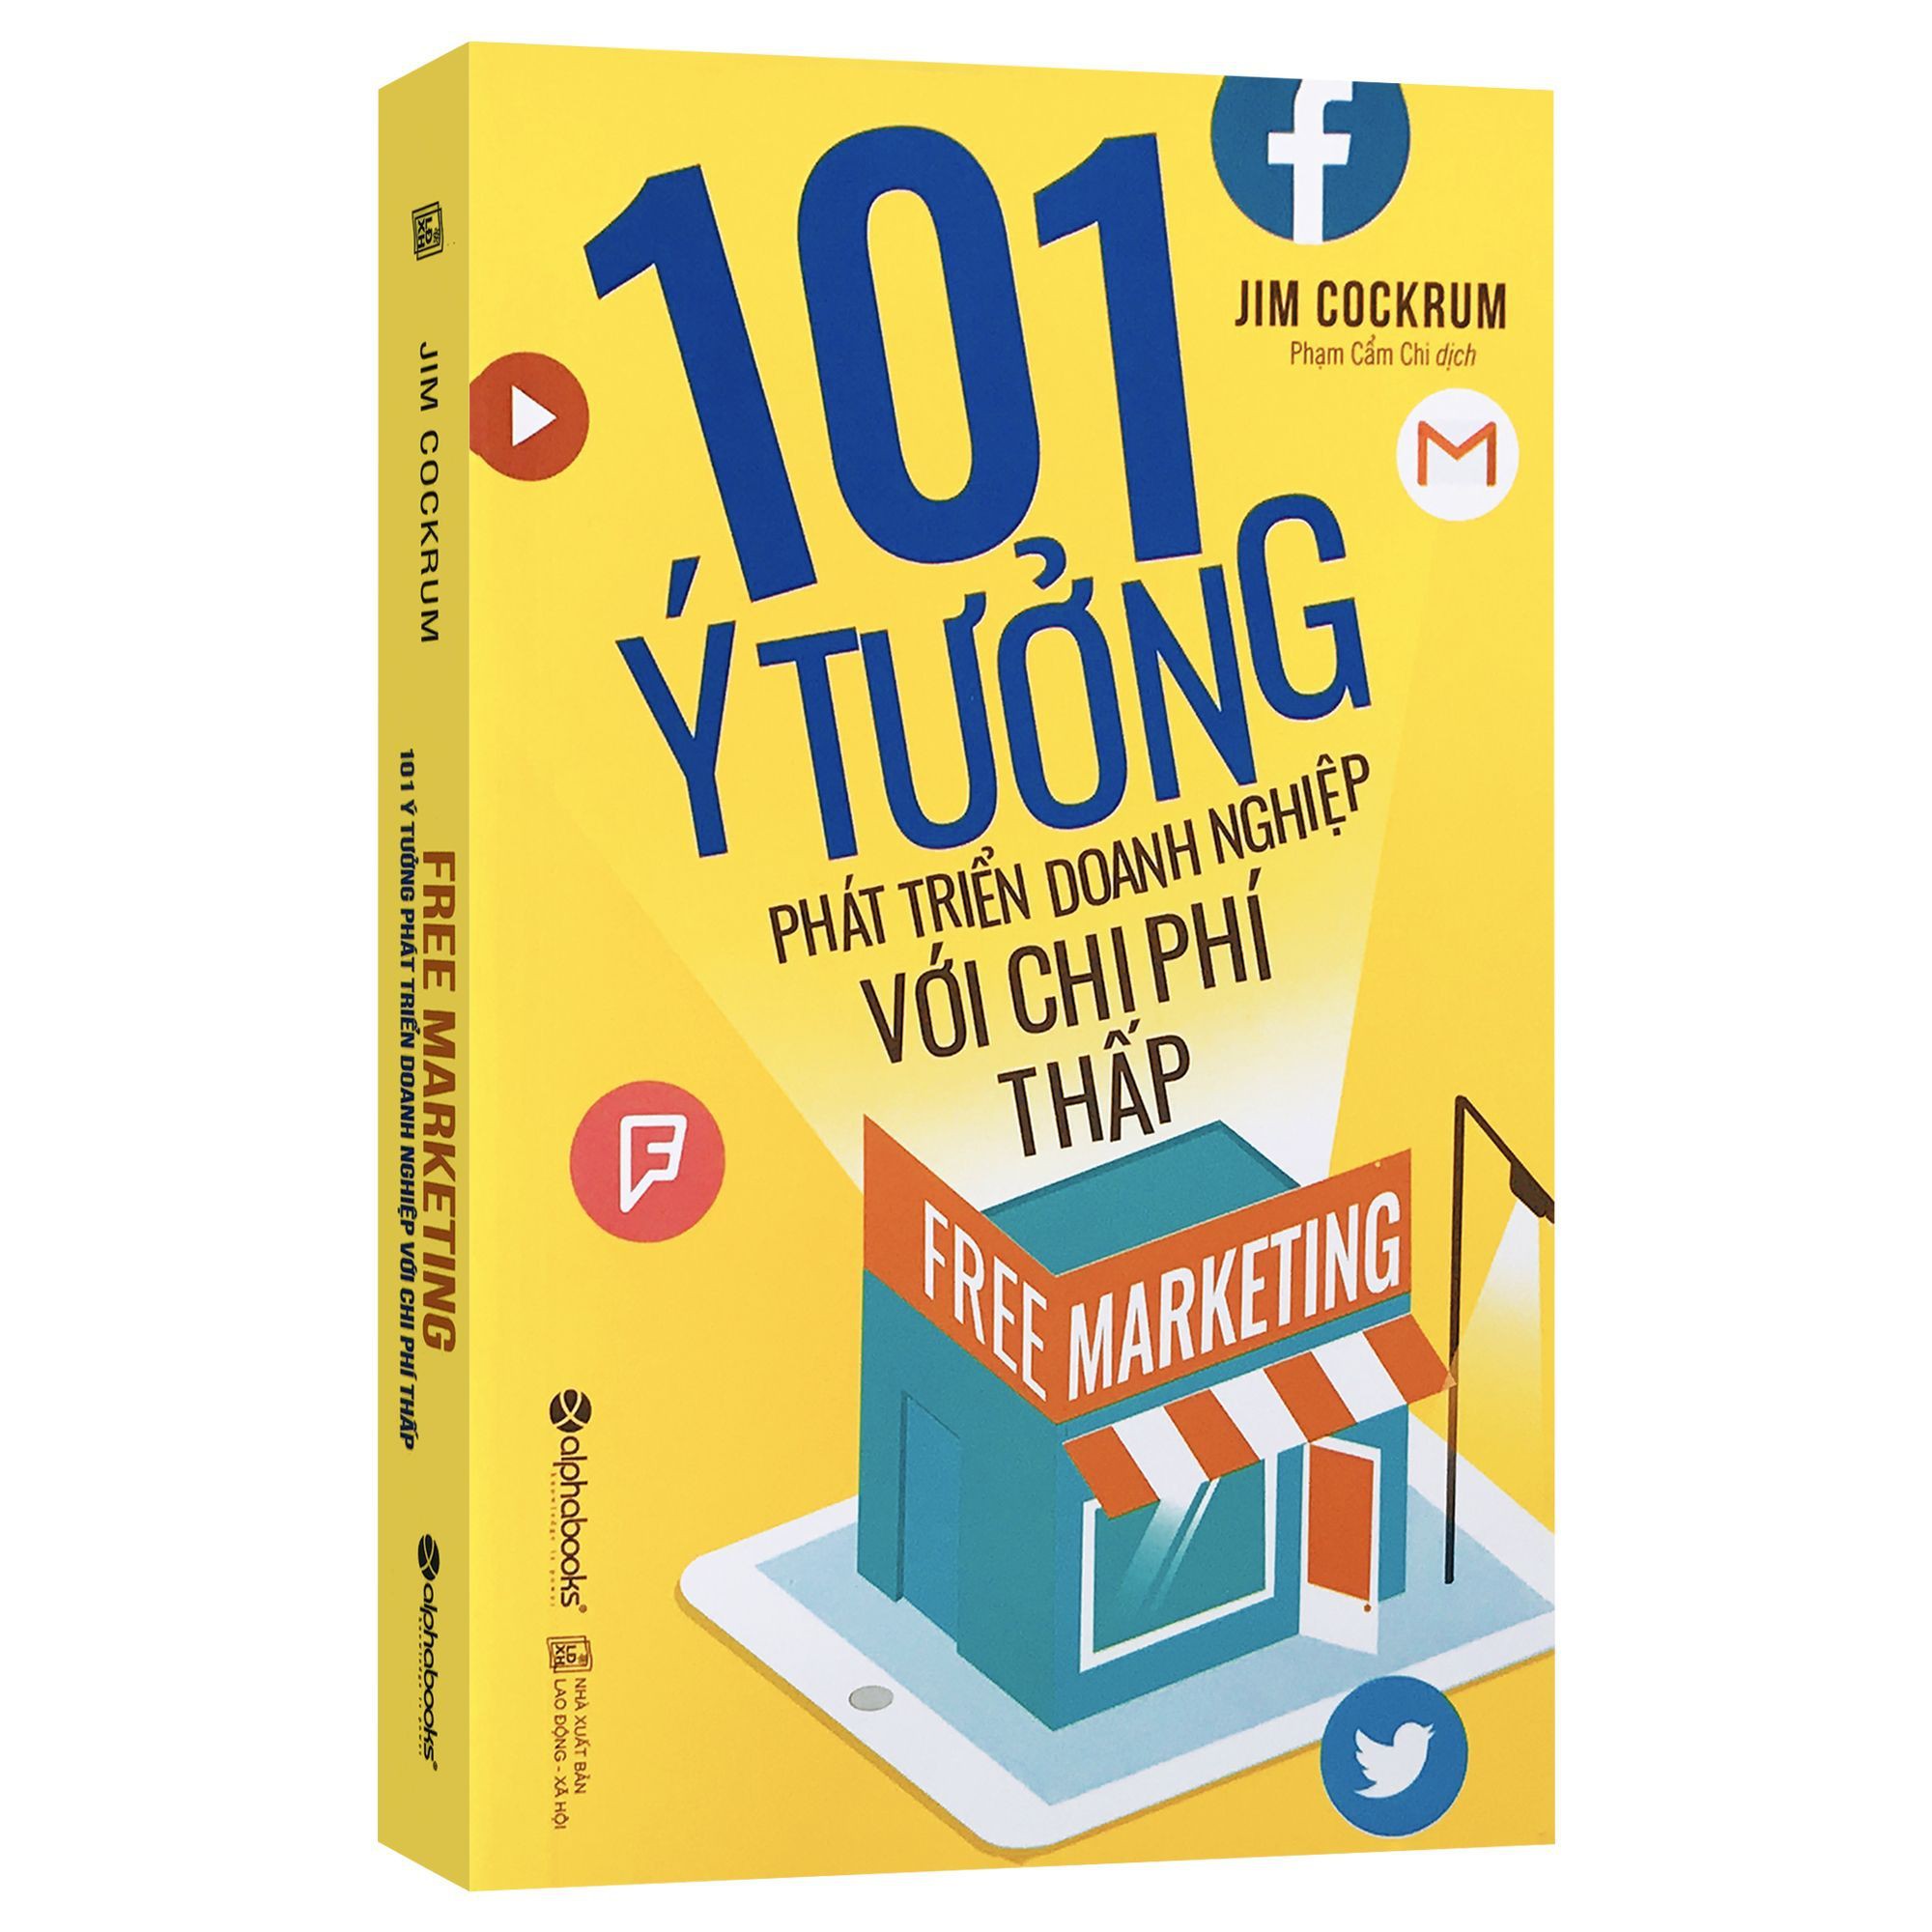 Sách - Free Marketing - 101 Ý Tưởng Phát Triển Doanh Nghiệp Với Chi Phí Thấp - Thanh Hà Books